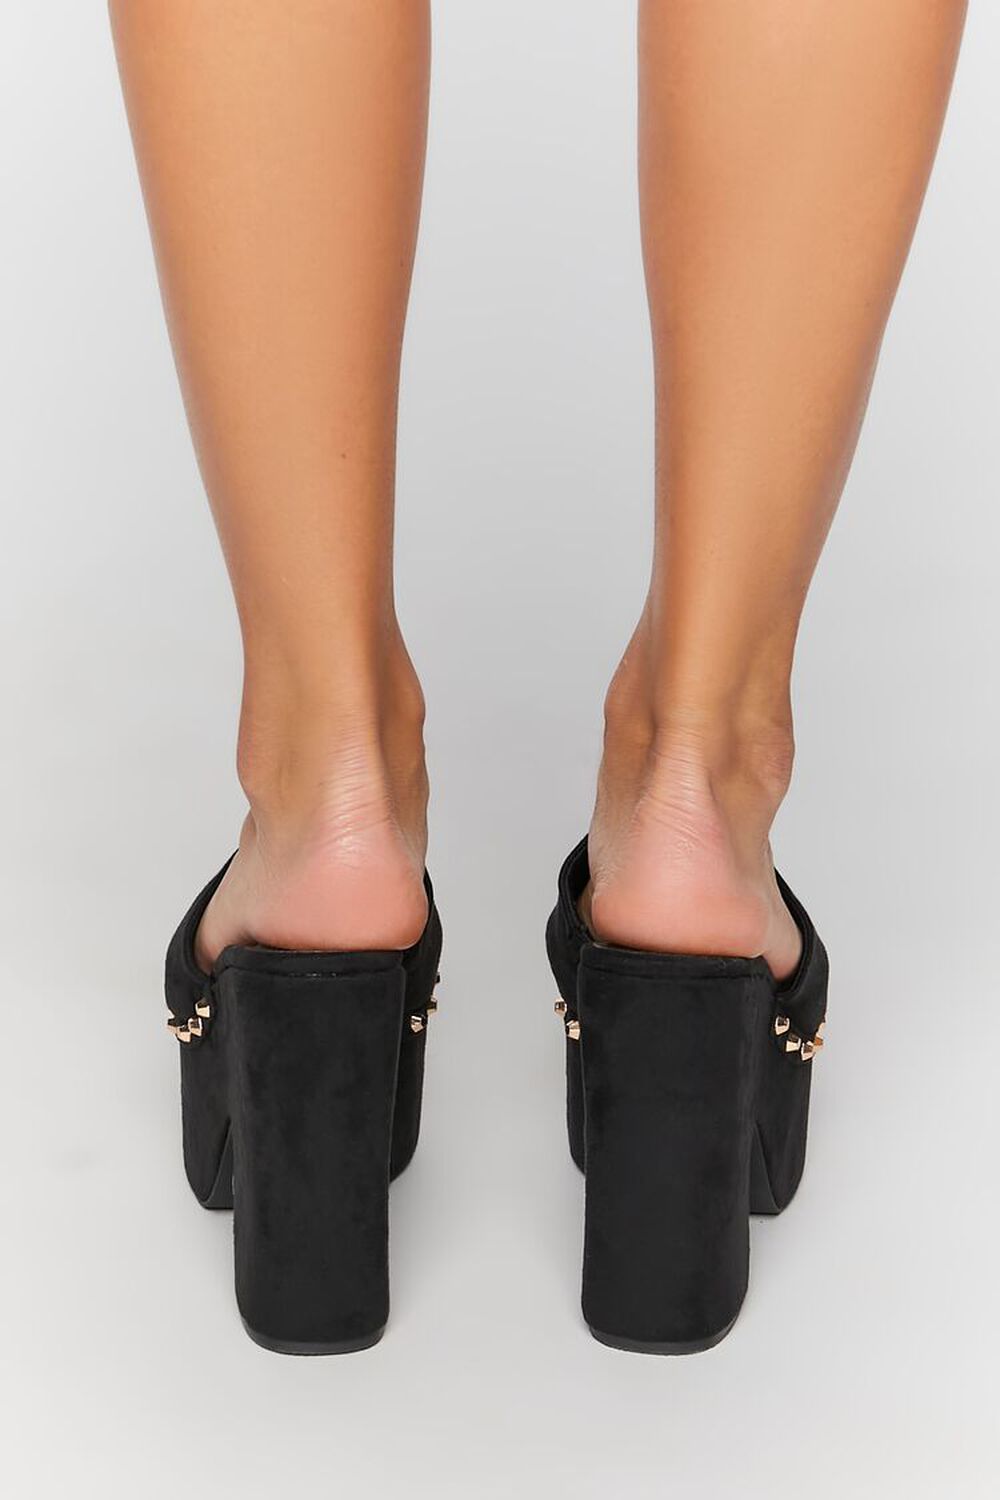 BLACK Studded Platform Clog Heels, image 3